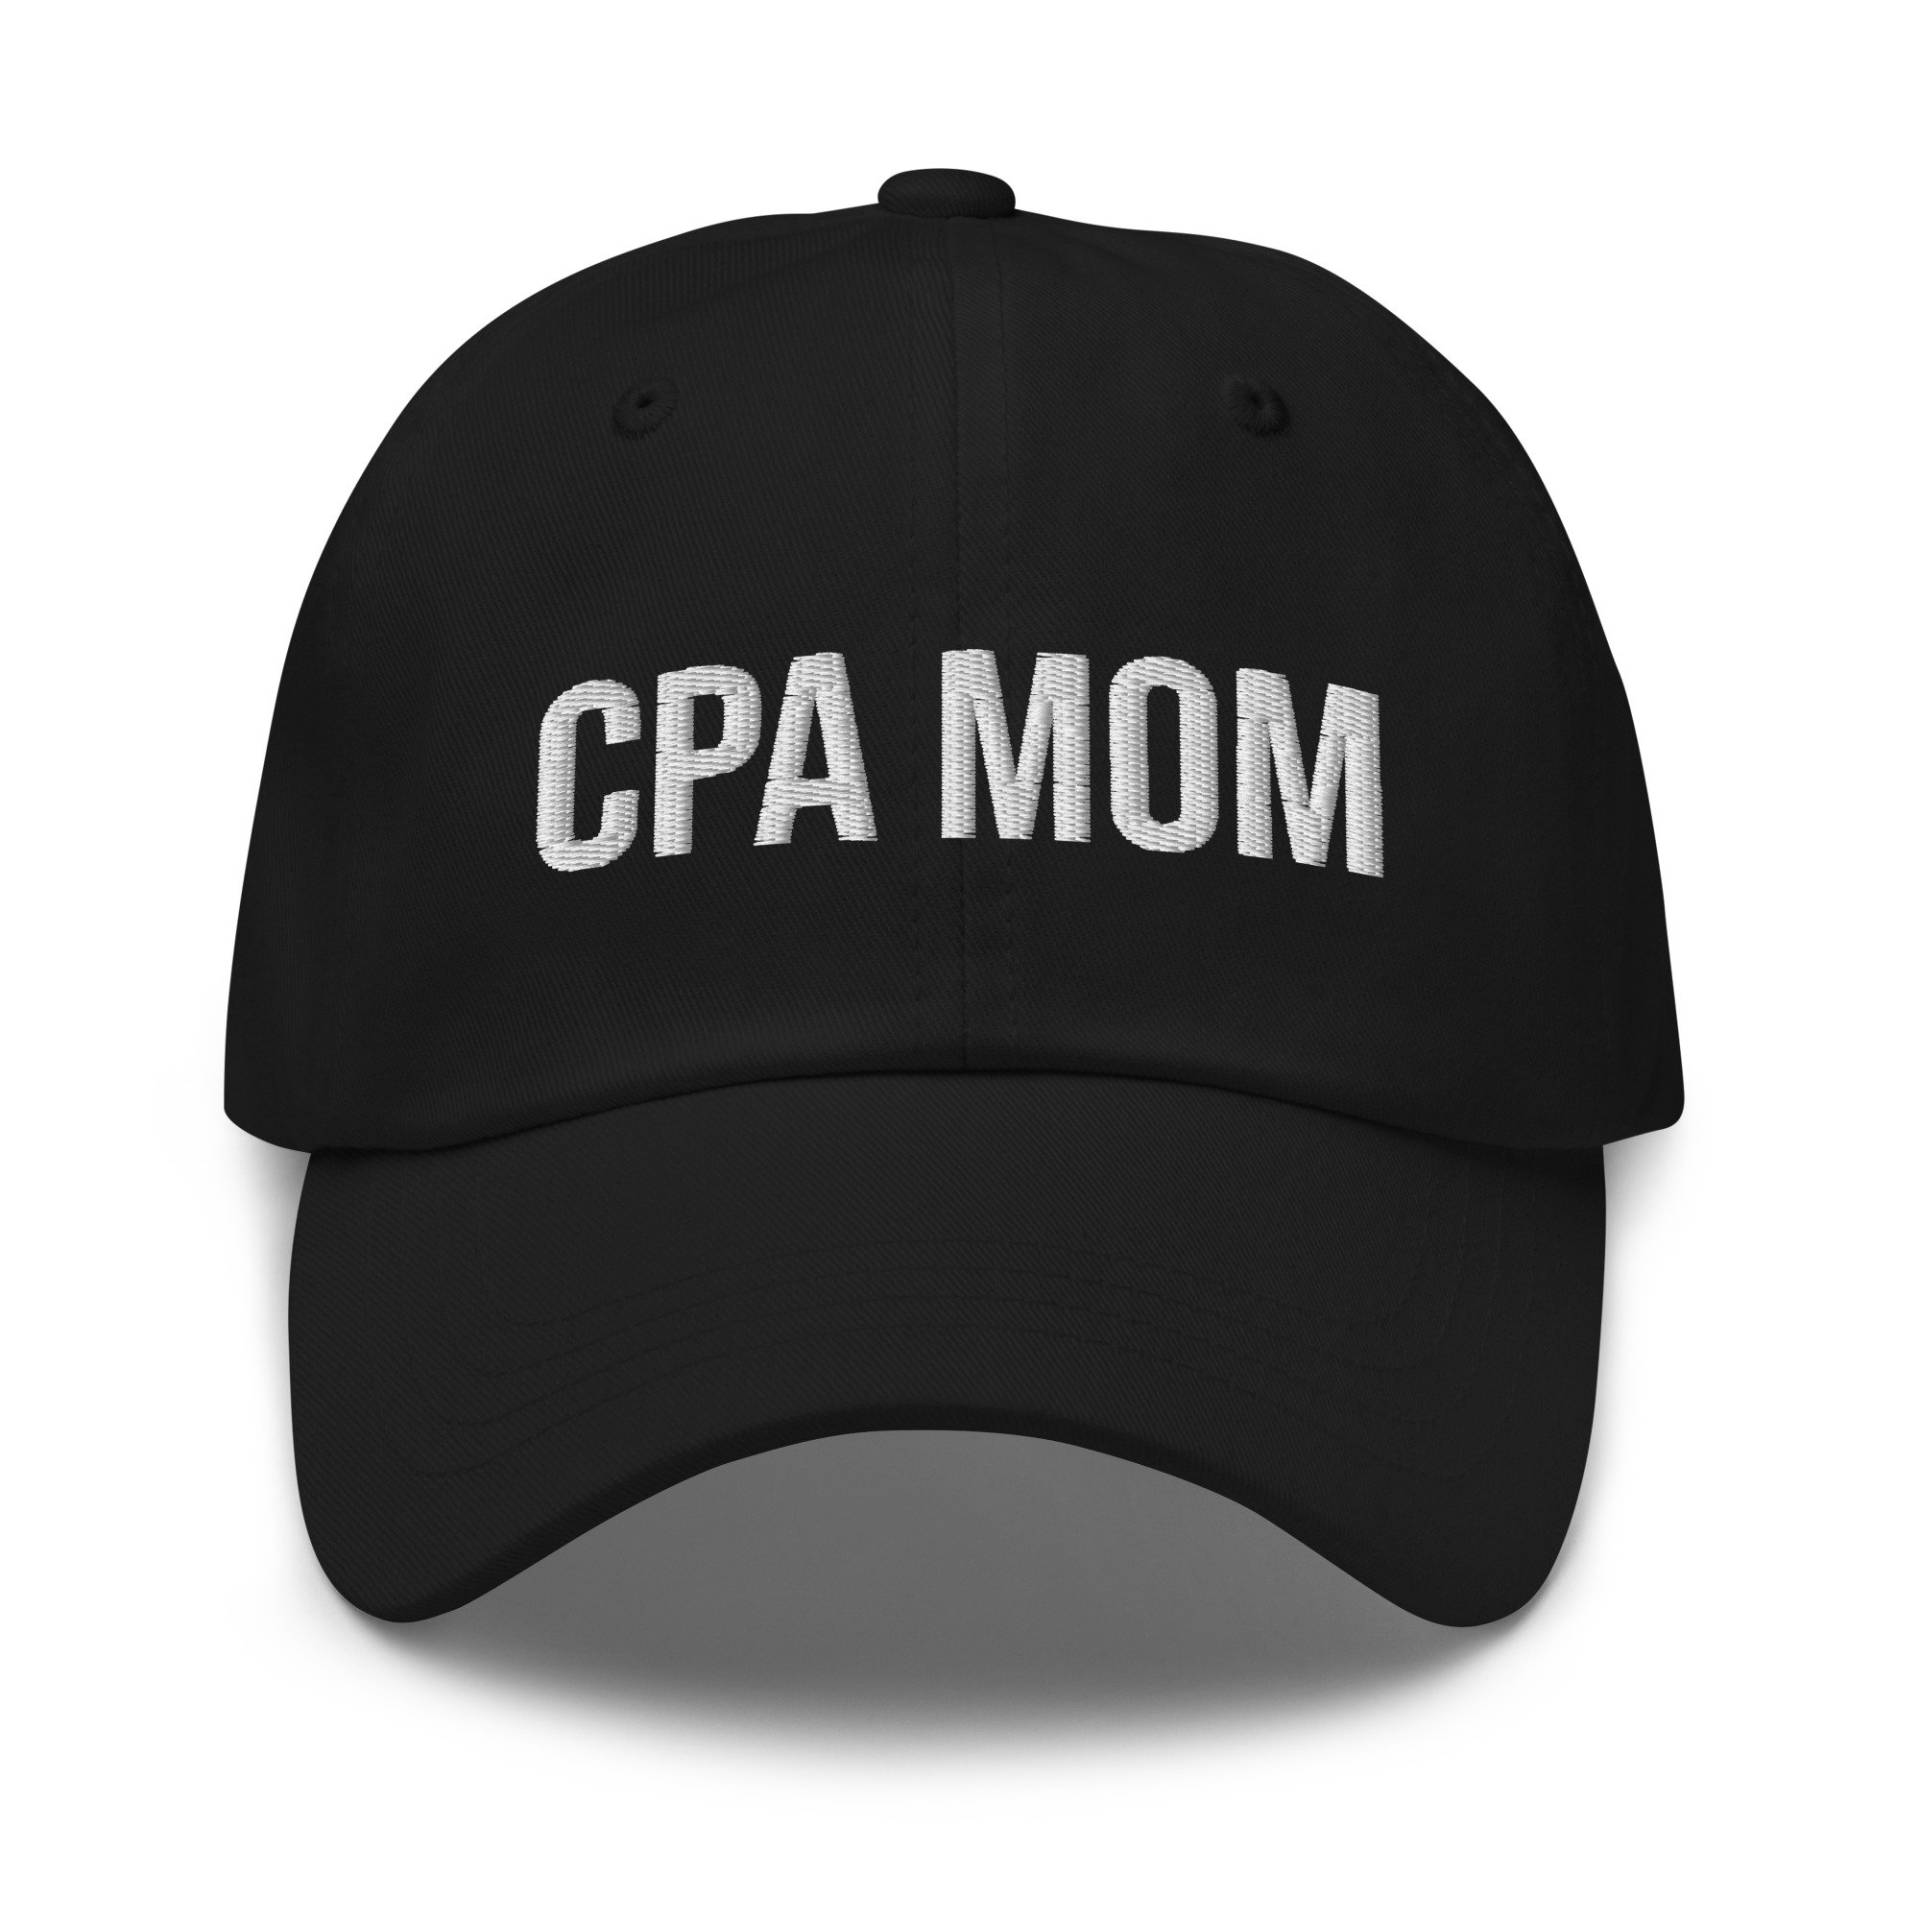 Cpa Mom Hat, Geschenk, Geschenk Für Cpa, Buchhalter Buchhaltungsgeschenk, Steuersaison, Gestickter Hut, Gestickte Mütze, Mutter, Muttergeschenk von CreativeHats4You